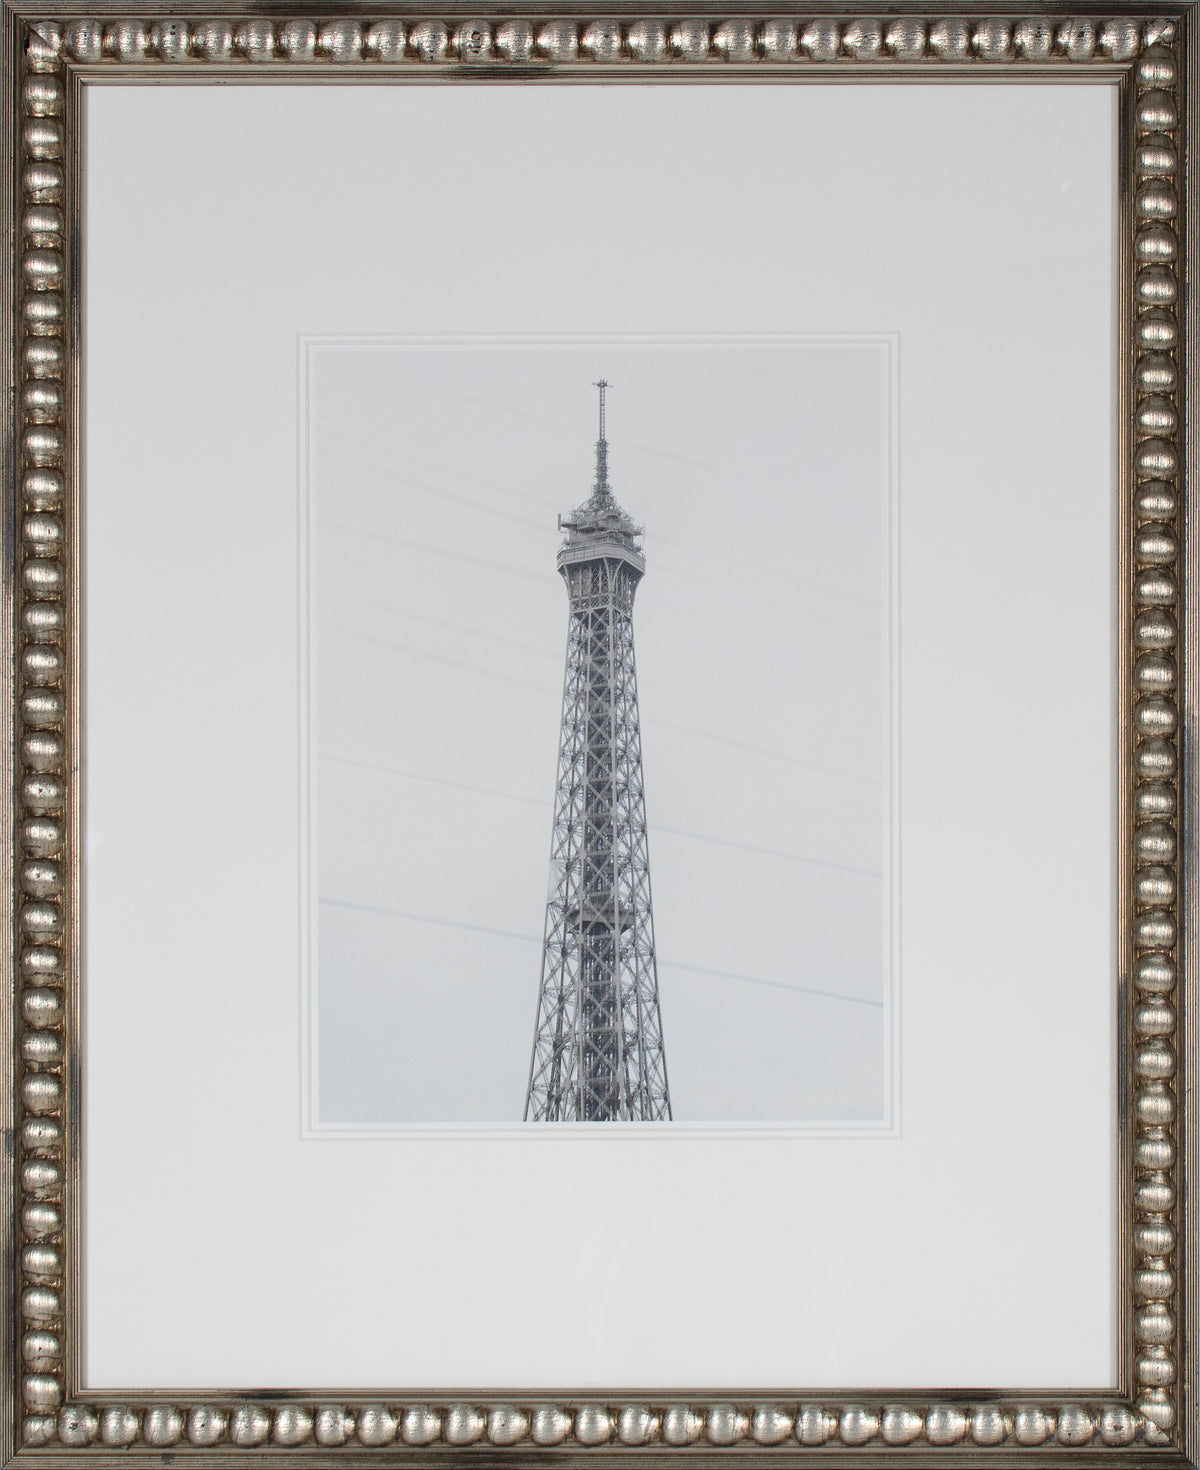 &lt;i&gt;La Tour Eiffel&lt;/i&gt; &lt;br&gt;2019 Paris, France &lt;br&gt;&lt;br&gt;GC0486